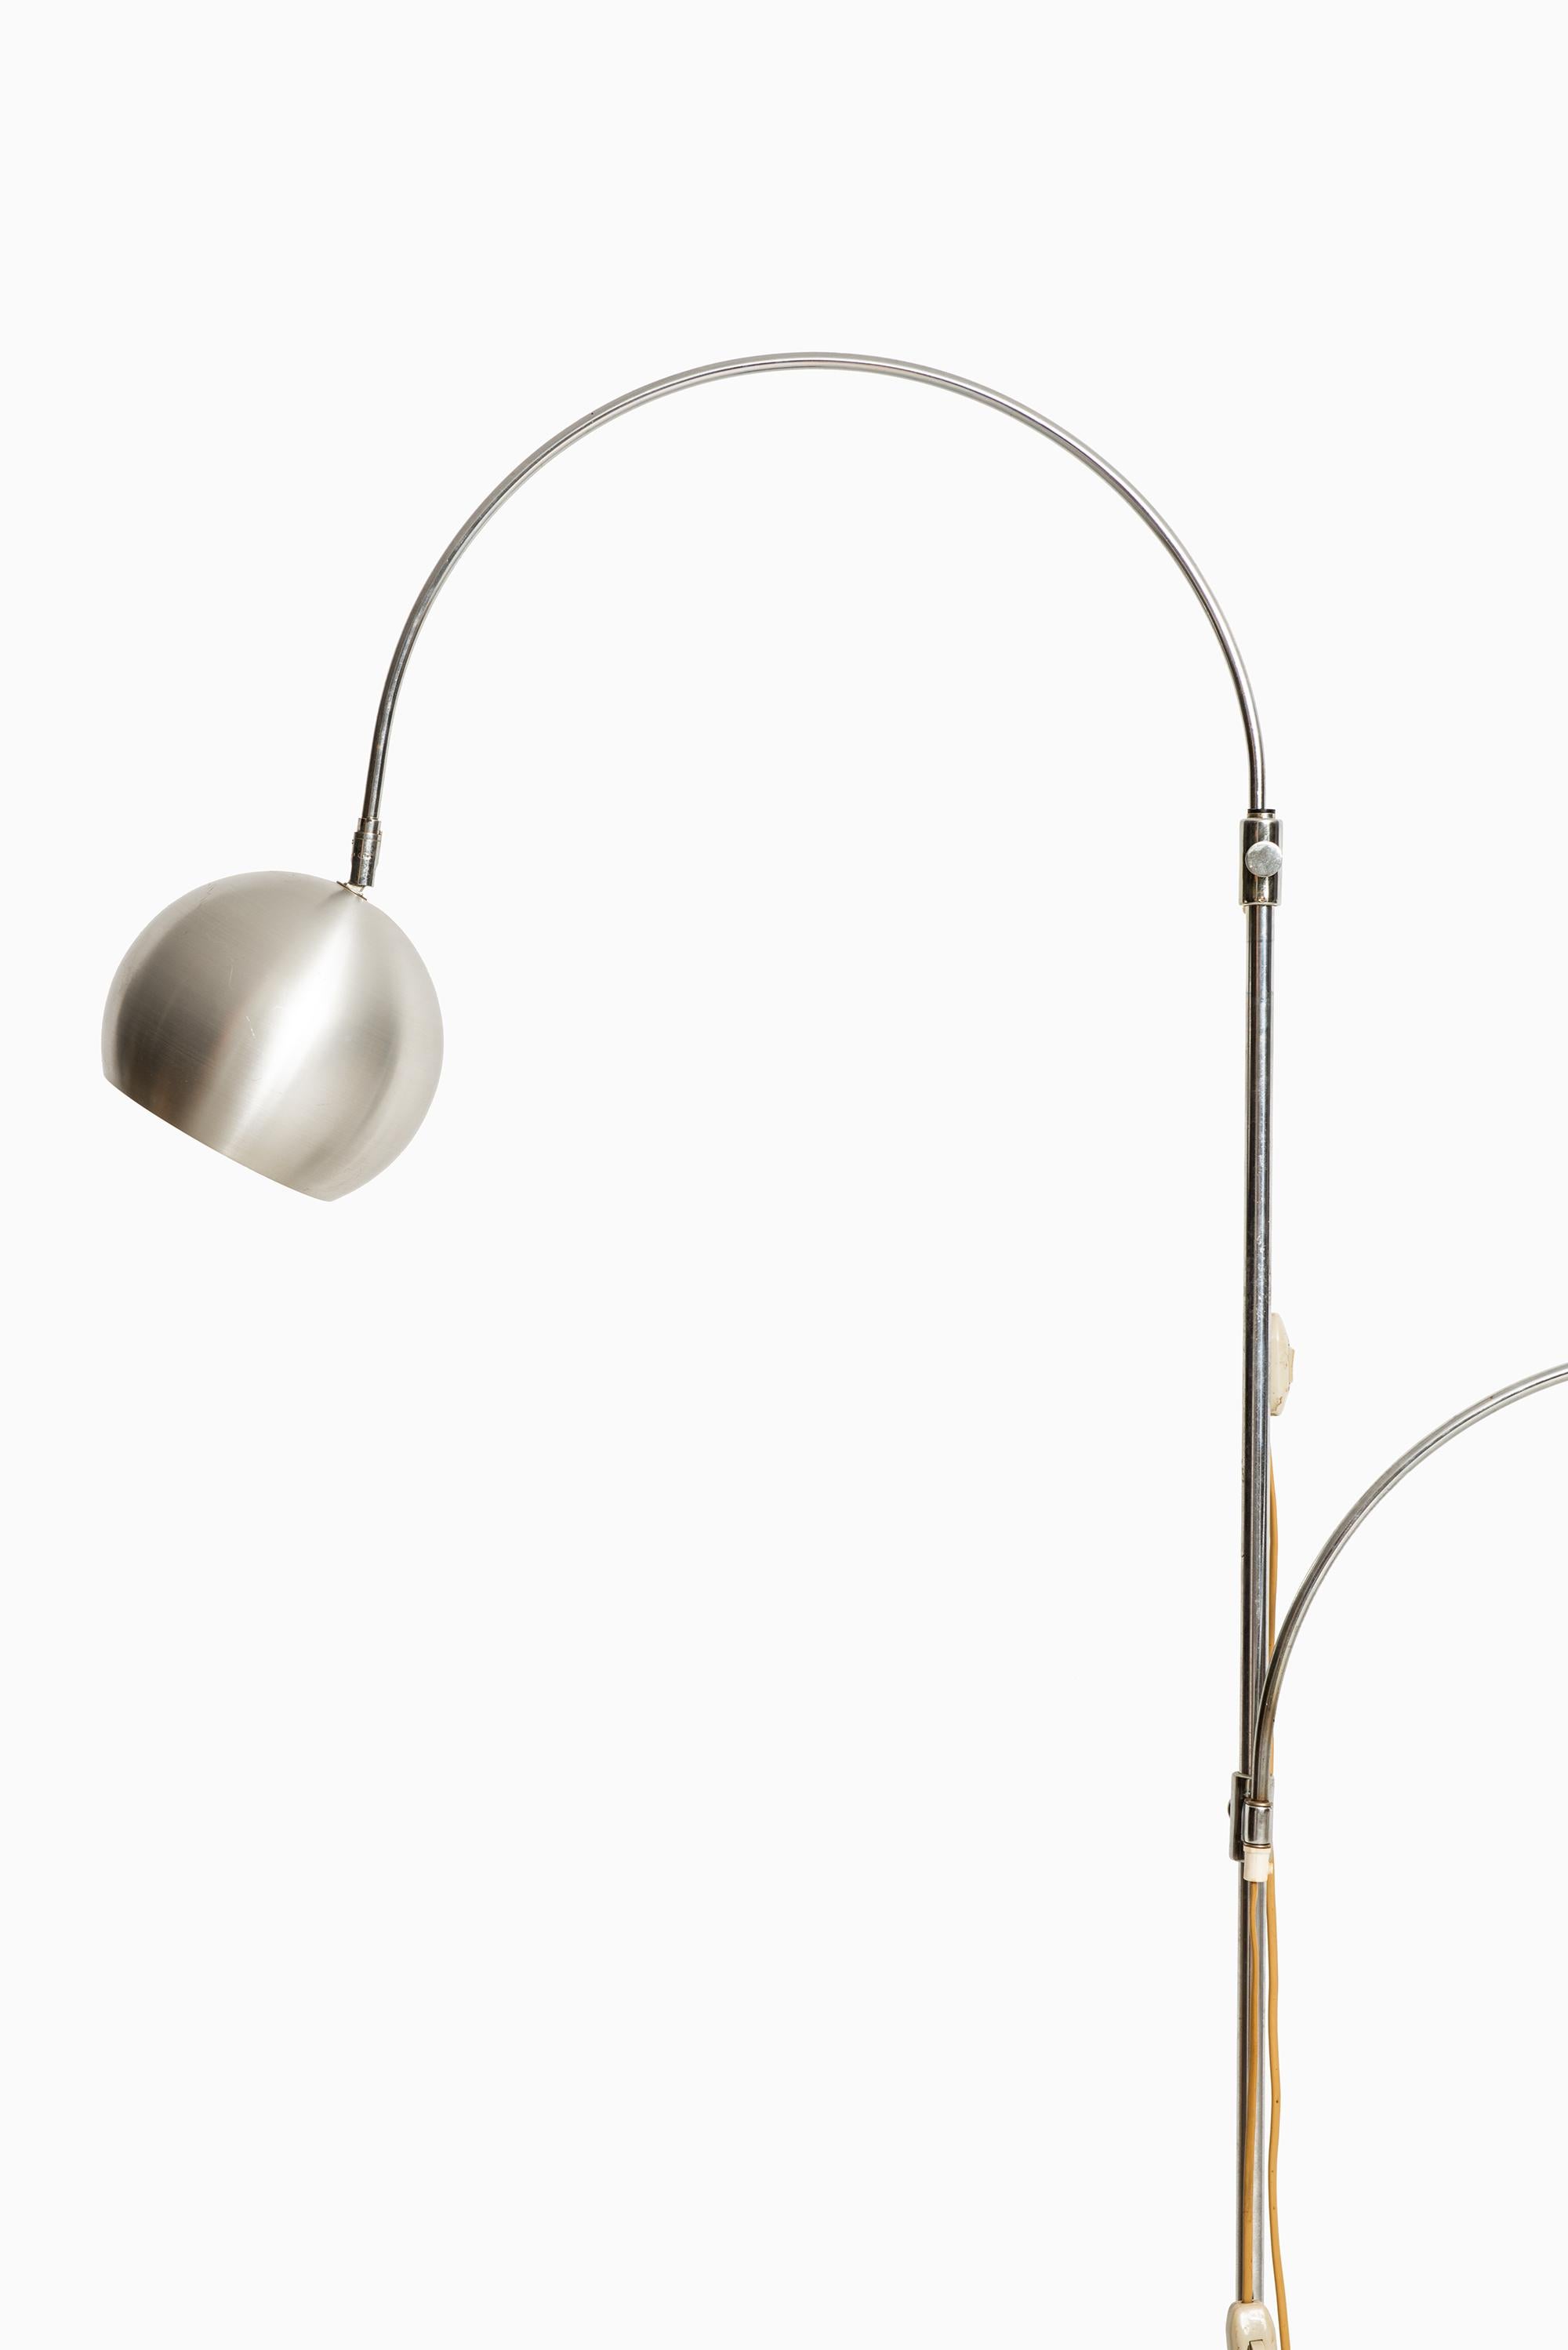 Rare lampadaire avec 2 bras flexibles et réglables en hauteur par un designer inconnu. Produit en Italie.